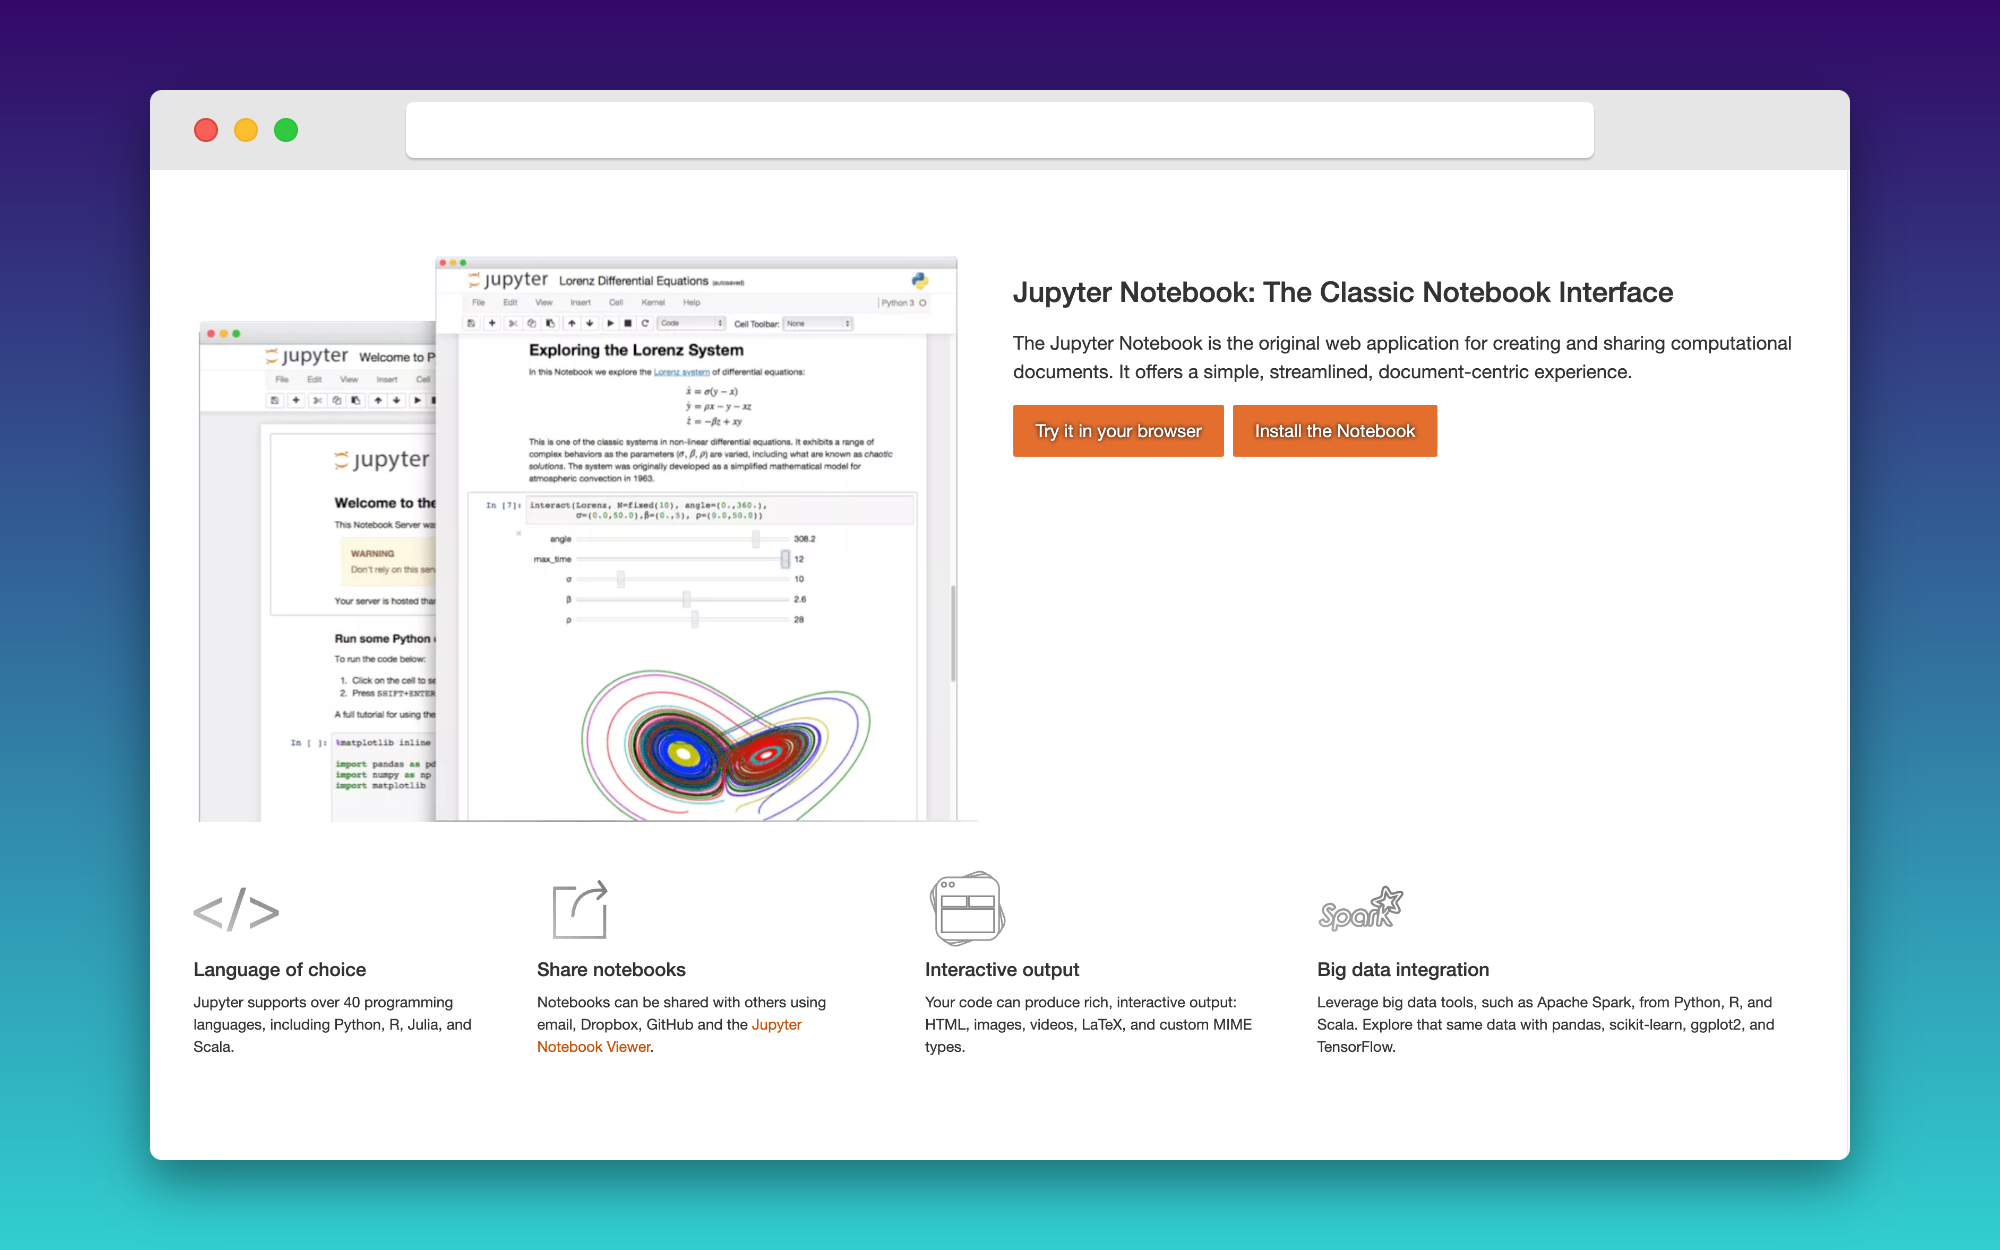 Jupyter Notebook, 라이브 코드, 시각화 및 설명 텍스트를 만들고 공유할 수 있는 오픈 소스 데이터 분석 플랫폼입니다.